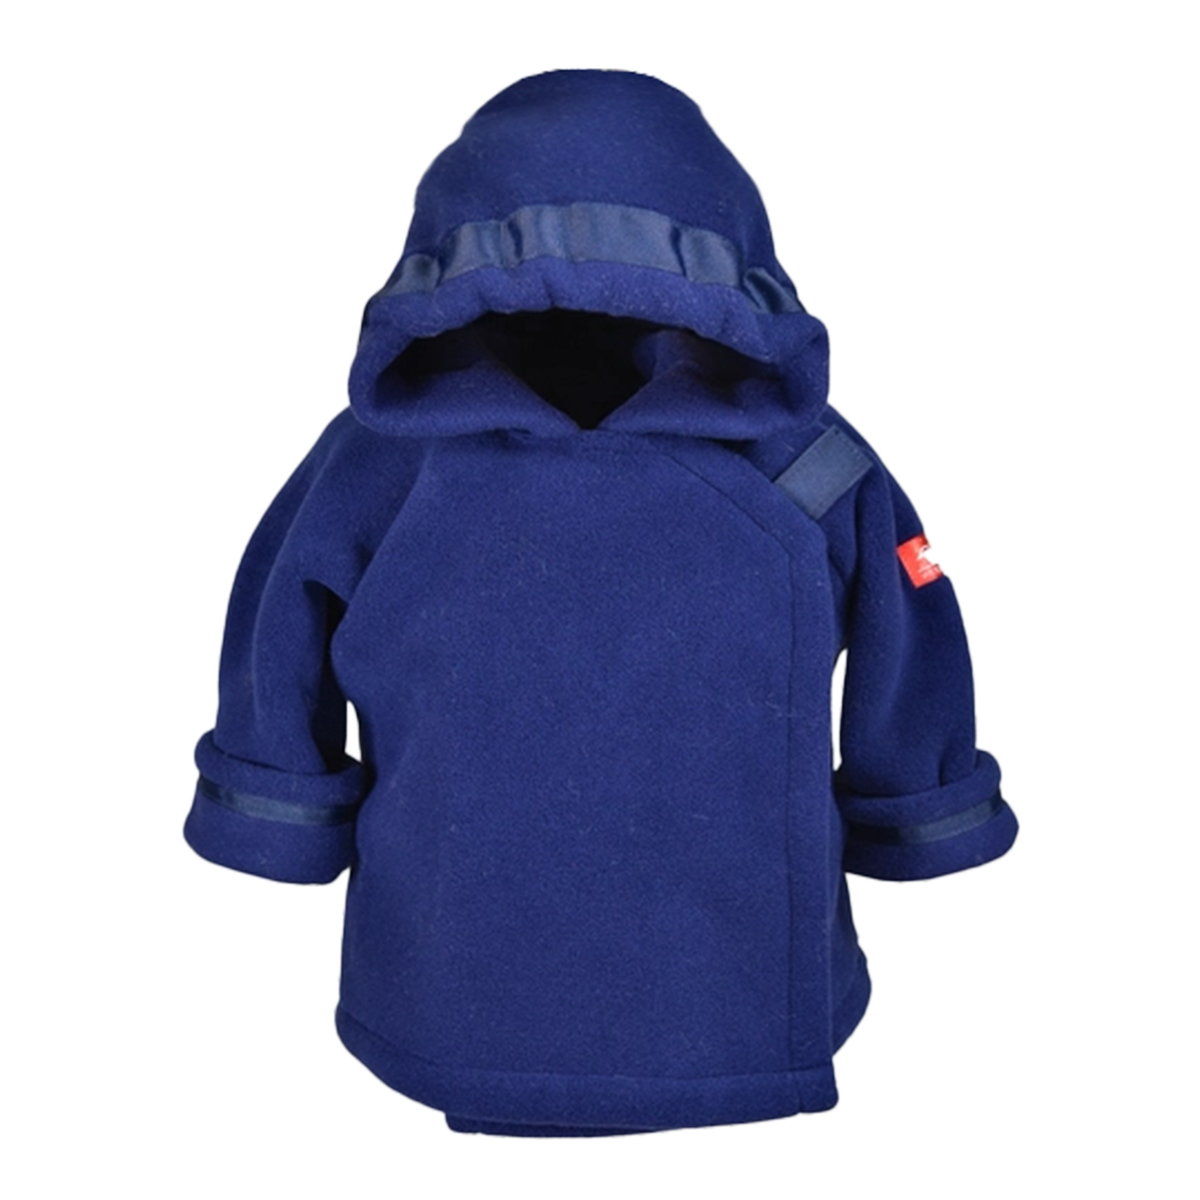 Baby Boy Navy Blue Fleece Toddler Jacket by Widgeon